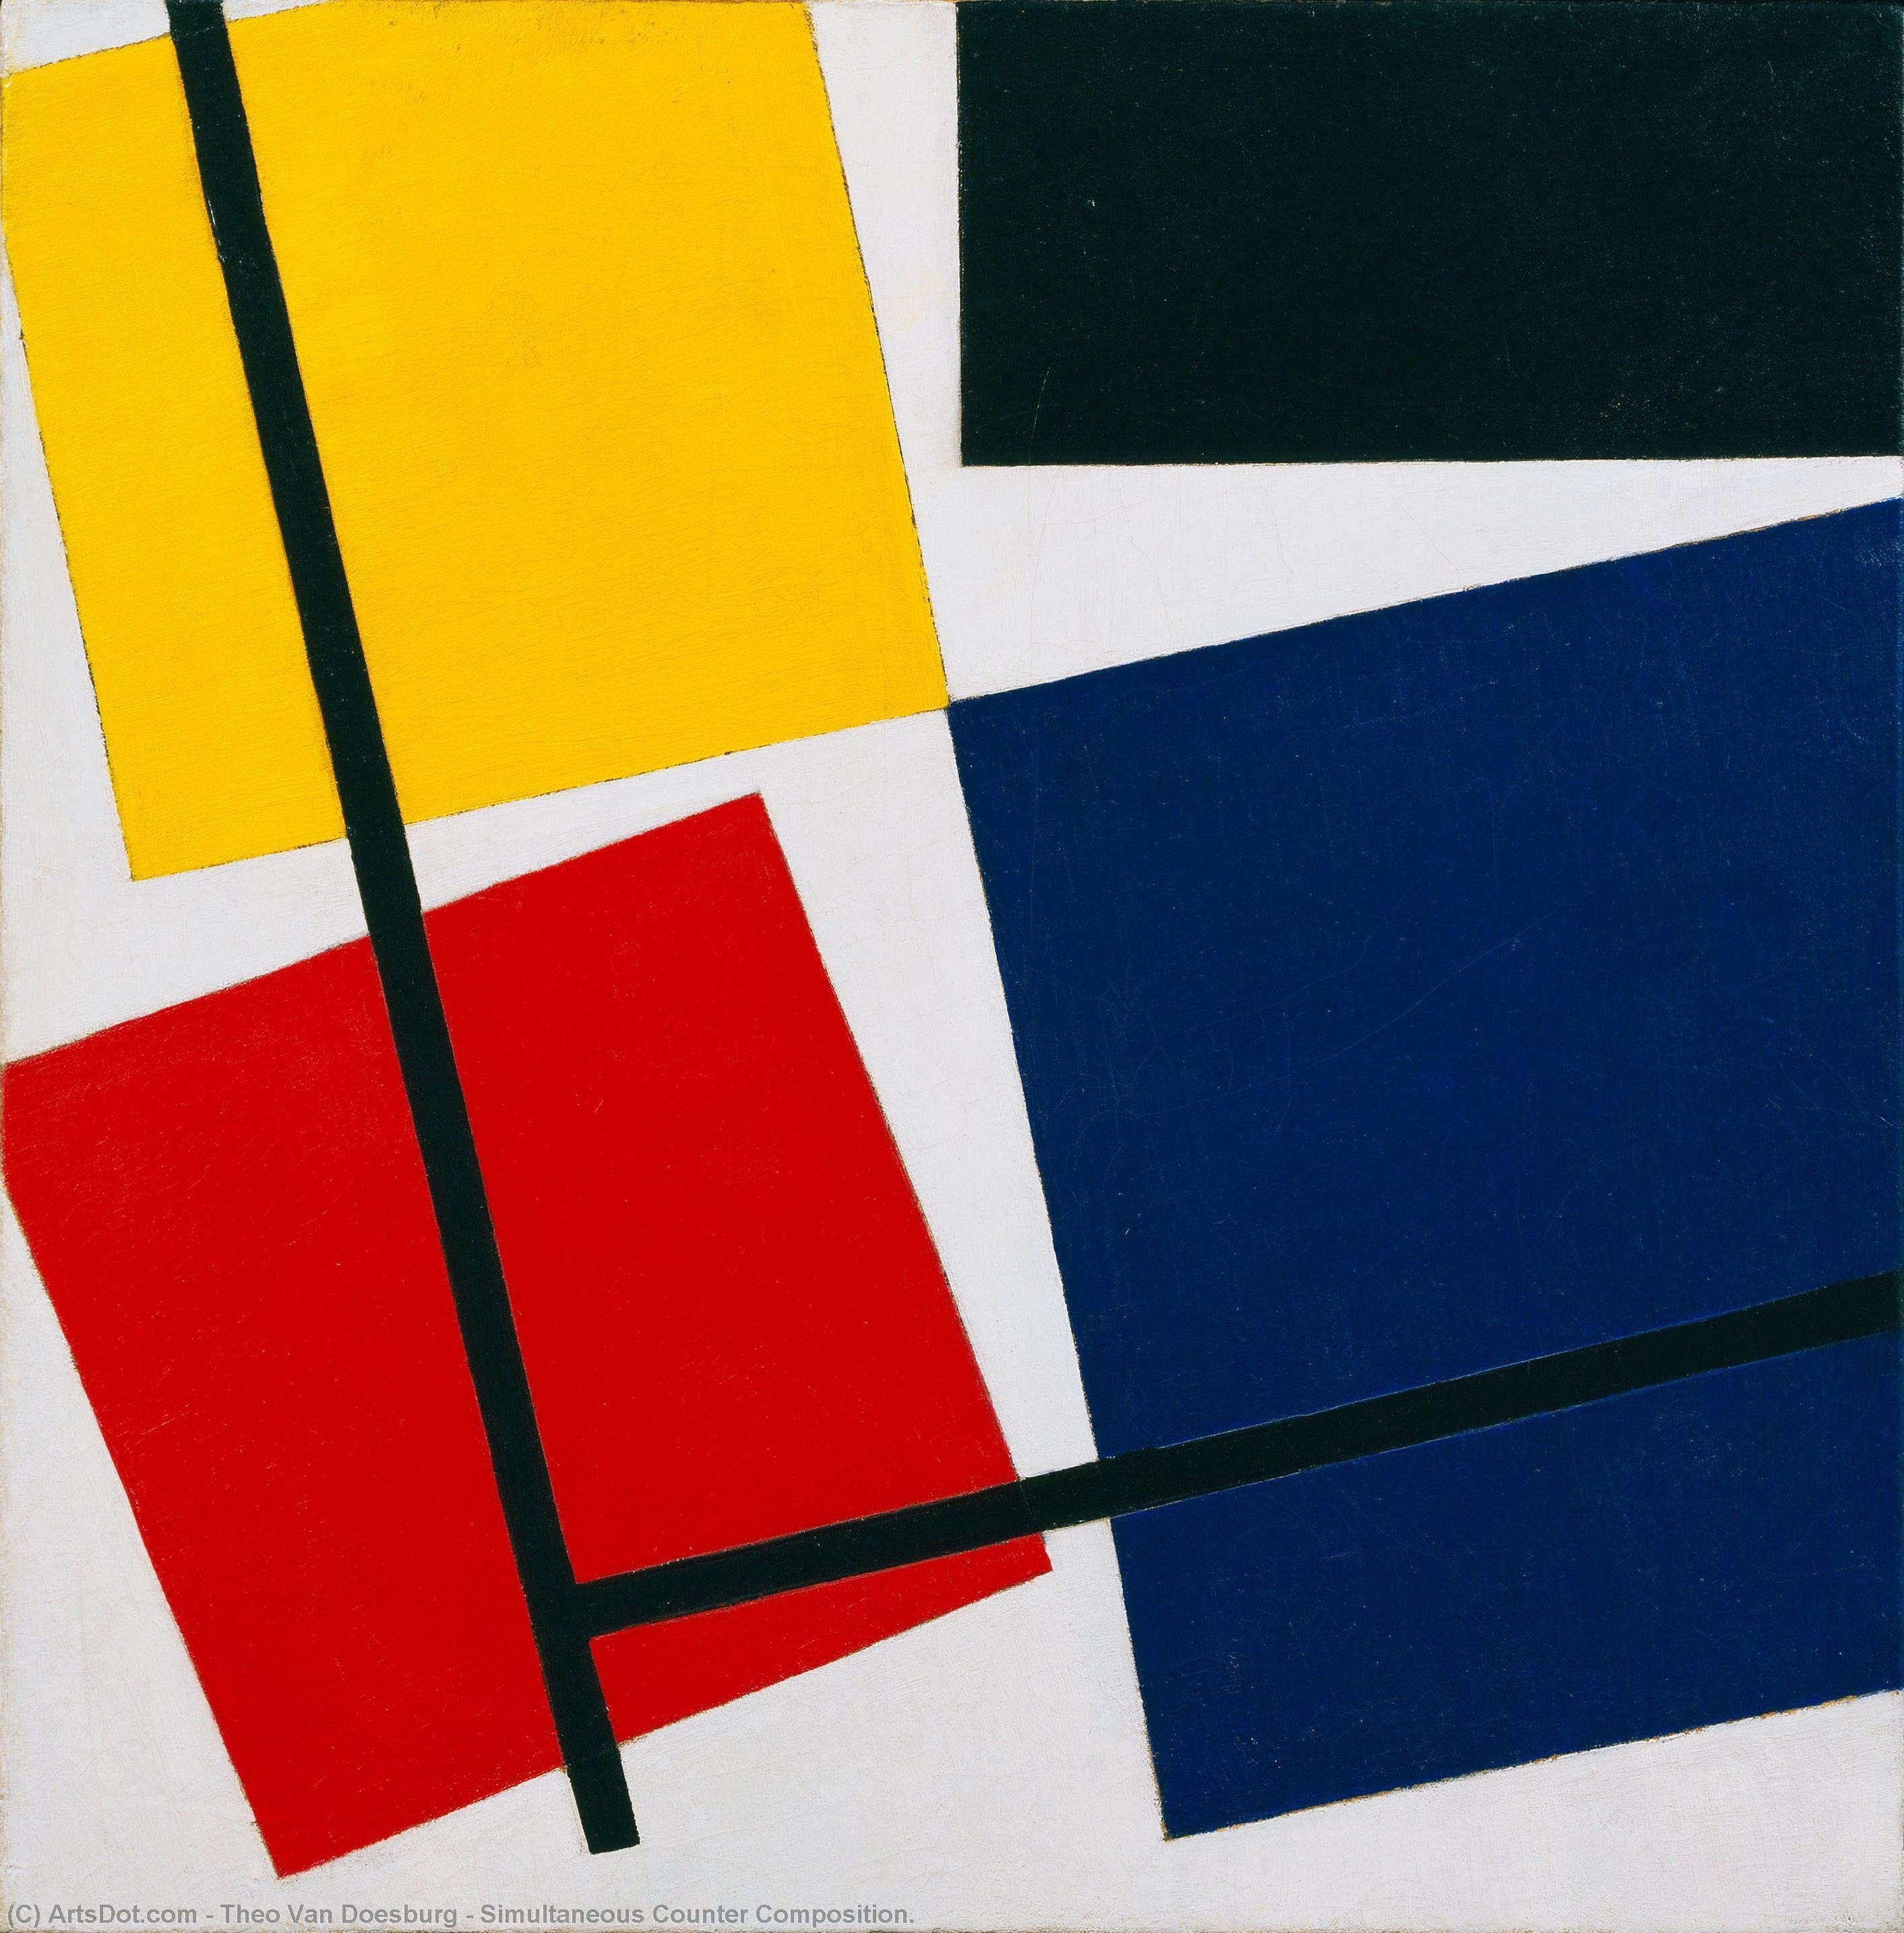 Wikioo.org - Bách khoa toàn thư về mỹ thuật - Vẽ tranh, Tác phẩm nghệ thuật Theo Van Doesburg - Simultaneous Counter Composition.